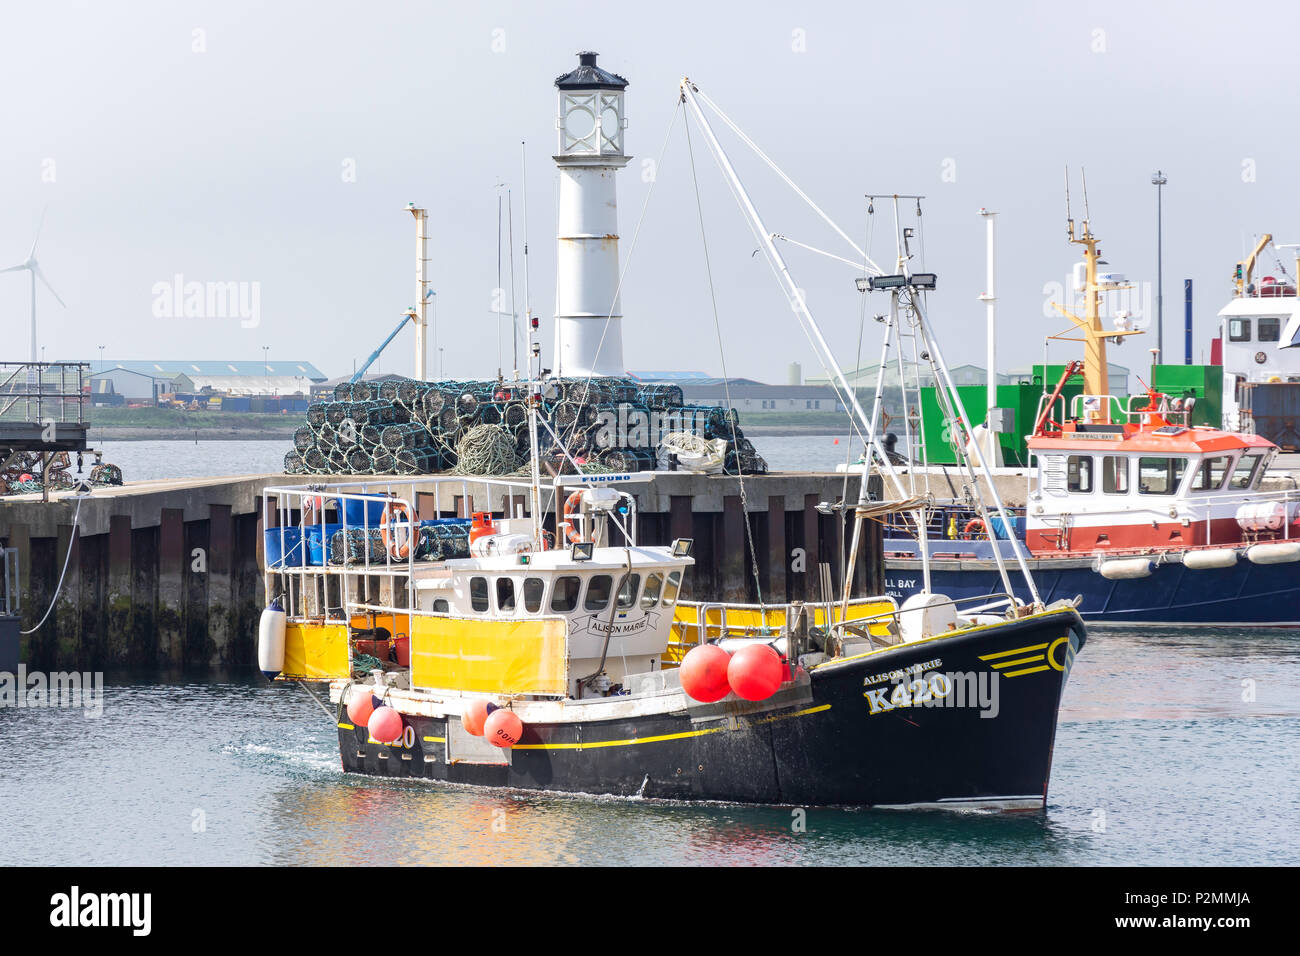 L'entrée en bateau de pêche, le port de Kirkwall, Orkney Islands, continentale, îles du Nord, Ecosse, Royaume-Uni Banque D'Images